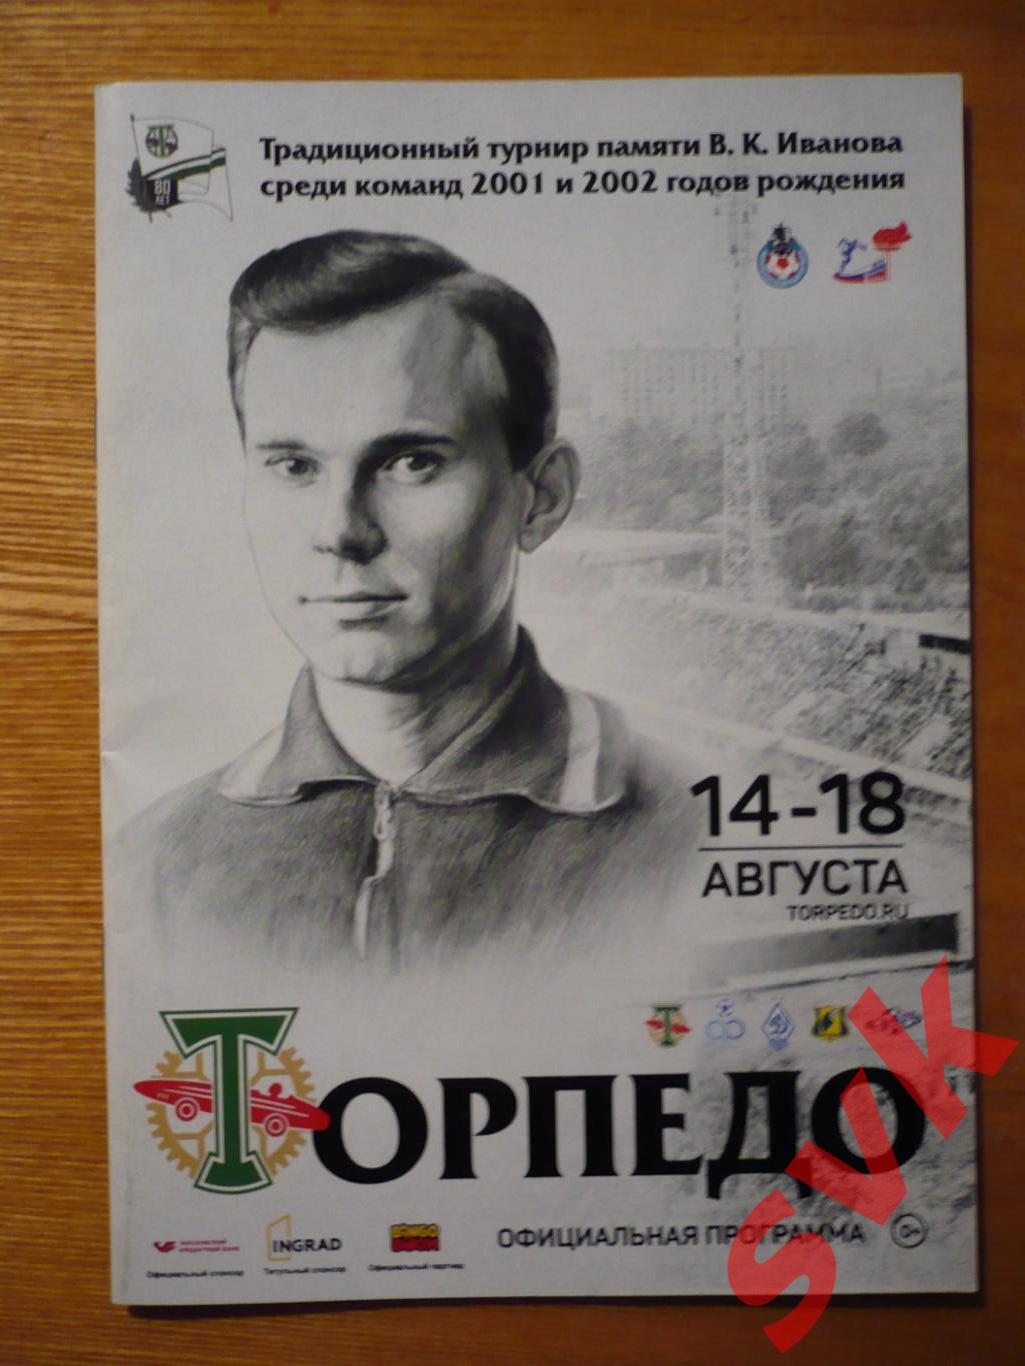 Традиционный турнир памяти В.К.Иванова среди команд 2001 и 2002 гр 14-18.08.2018